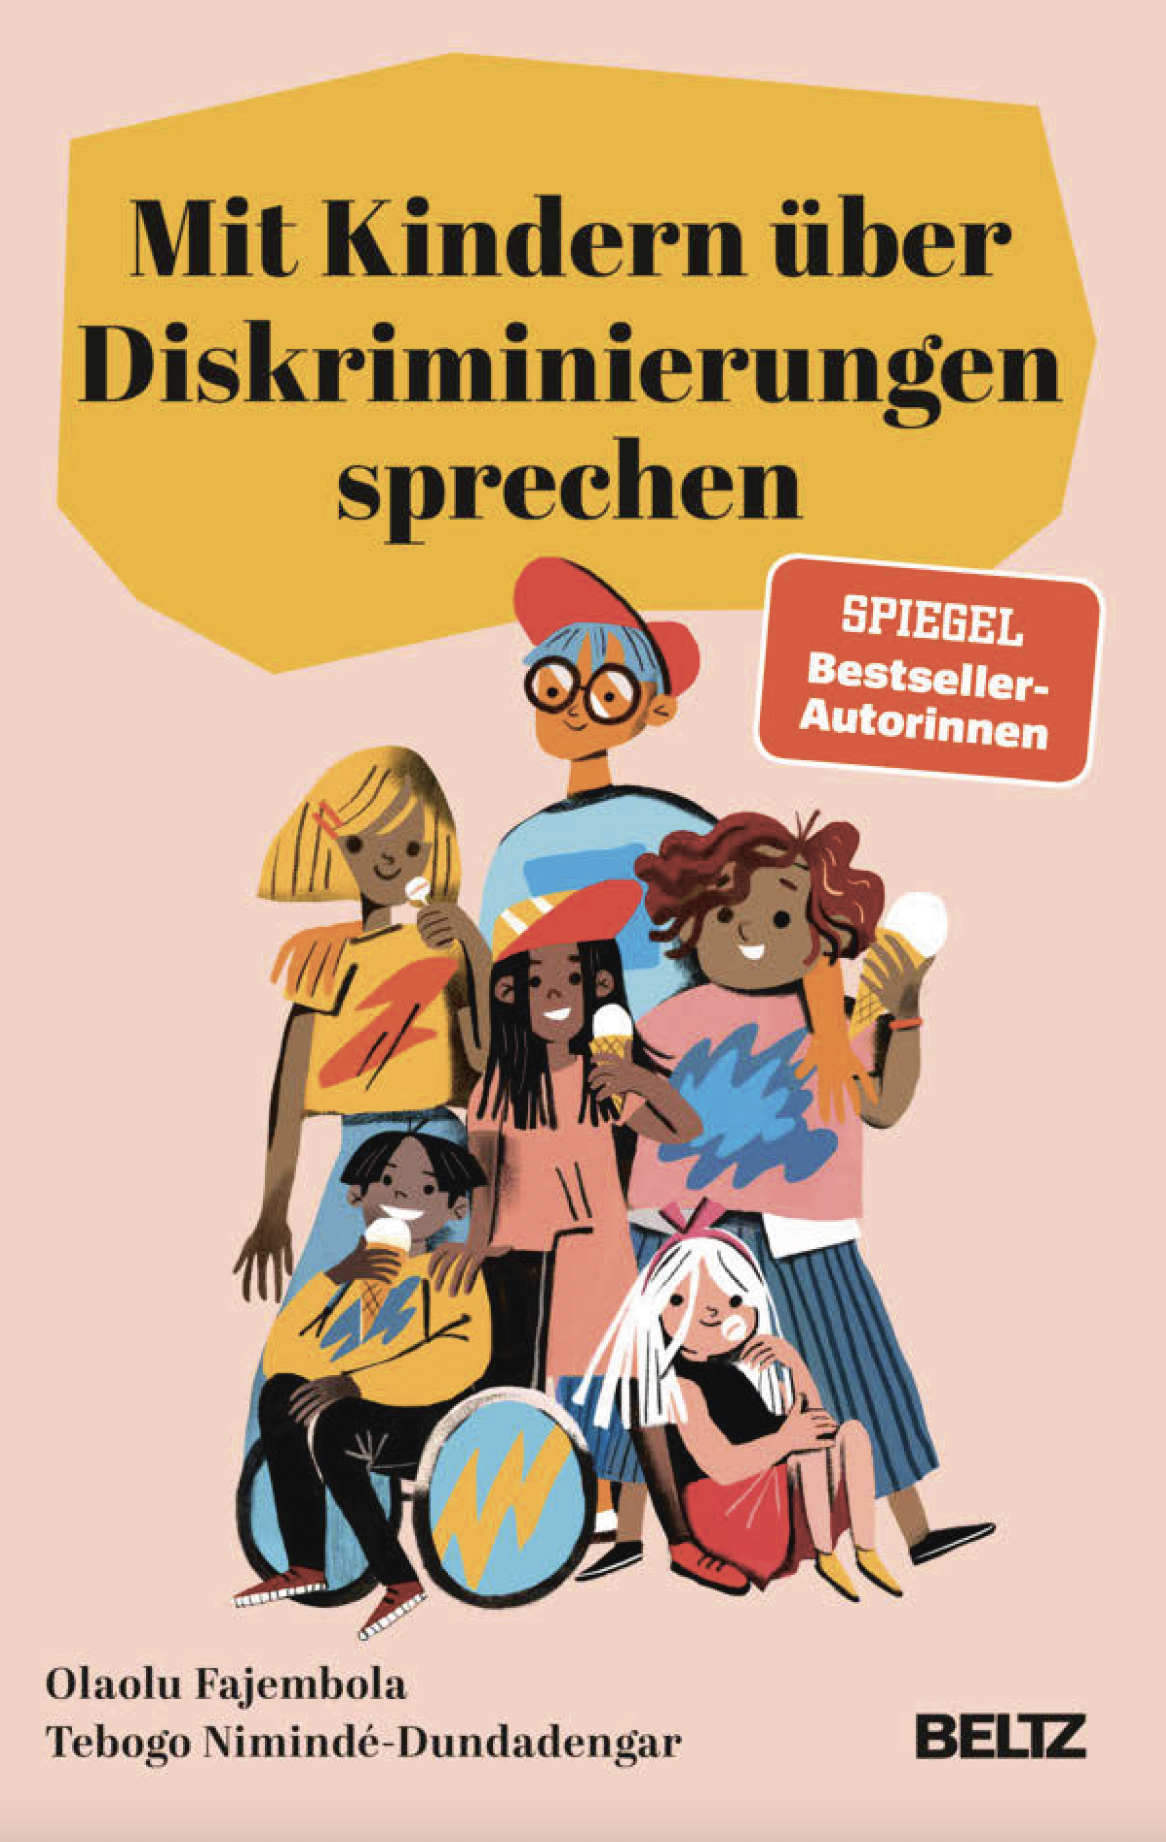 Buchcover Mit Kindern über Diskriminierung sprechen. Ein Bild von Kindern mit unterschiedlichen Hintergründen und Behinderungen.